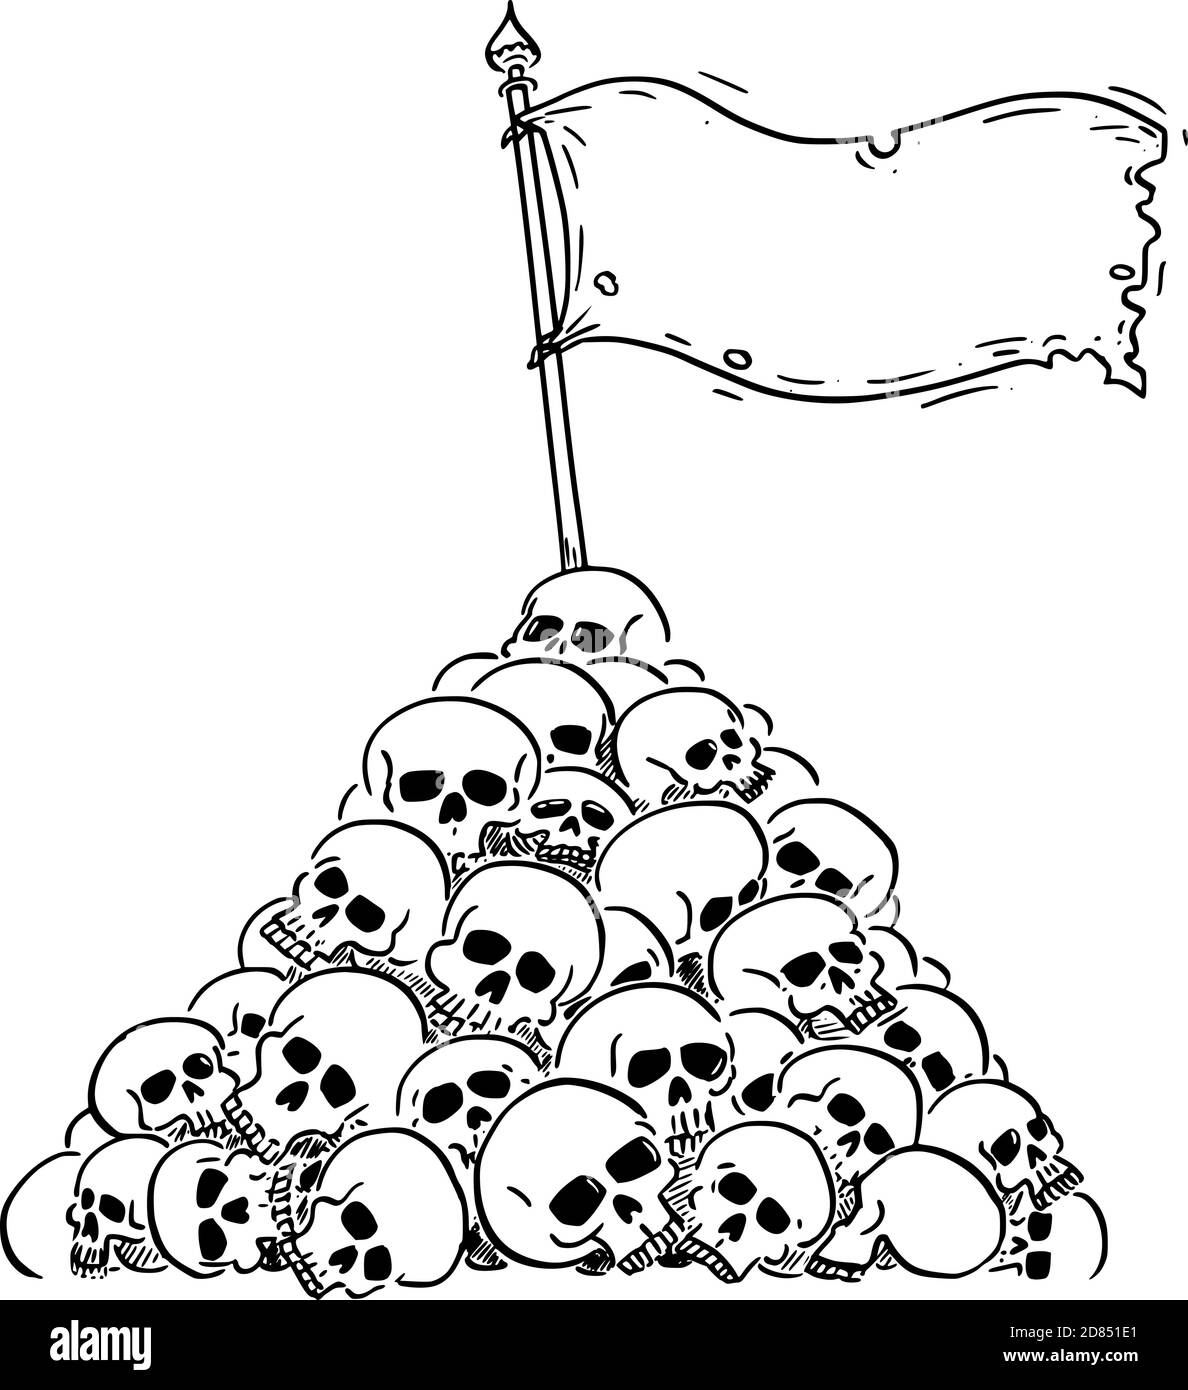 Vektor-Cartoon-Illustration der Kapitulation oder Sieg Flagge winken auf Haufen oder Haufen von menschlichen Schädeln. Konzept von Gewalt, Sieg, Niederlage, Epidemie, Krieg oder Tod. Stock Vektor